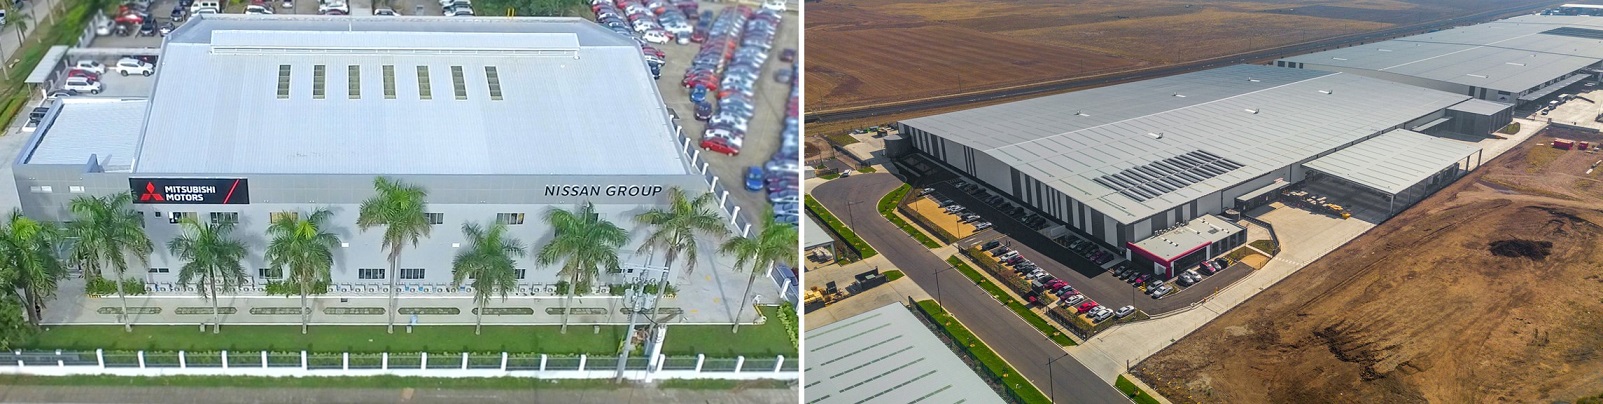 Cluster Industrial - Alianza renault-Nissan-mitsubishi inaugura centro de entrenamiento en filipinas